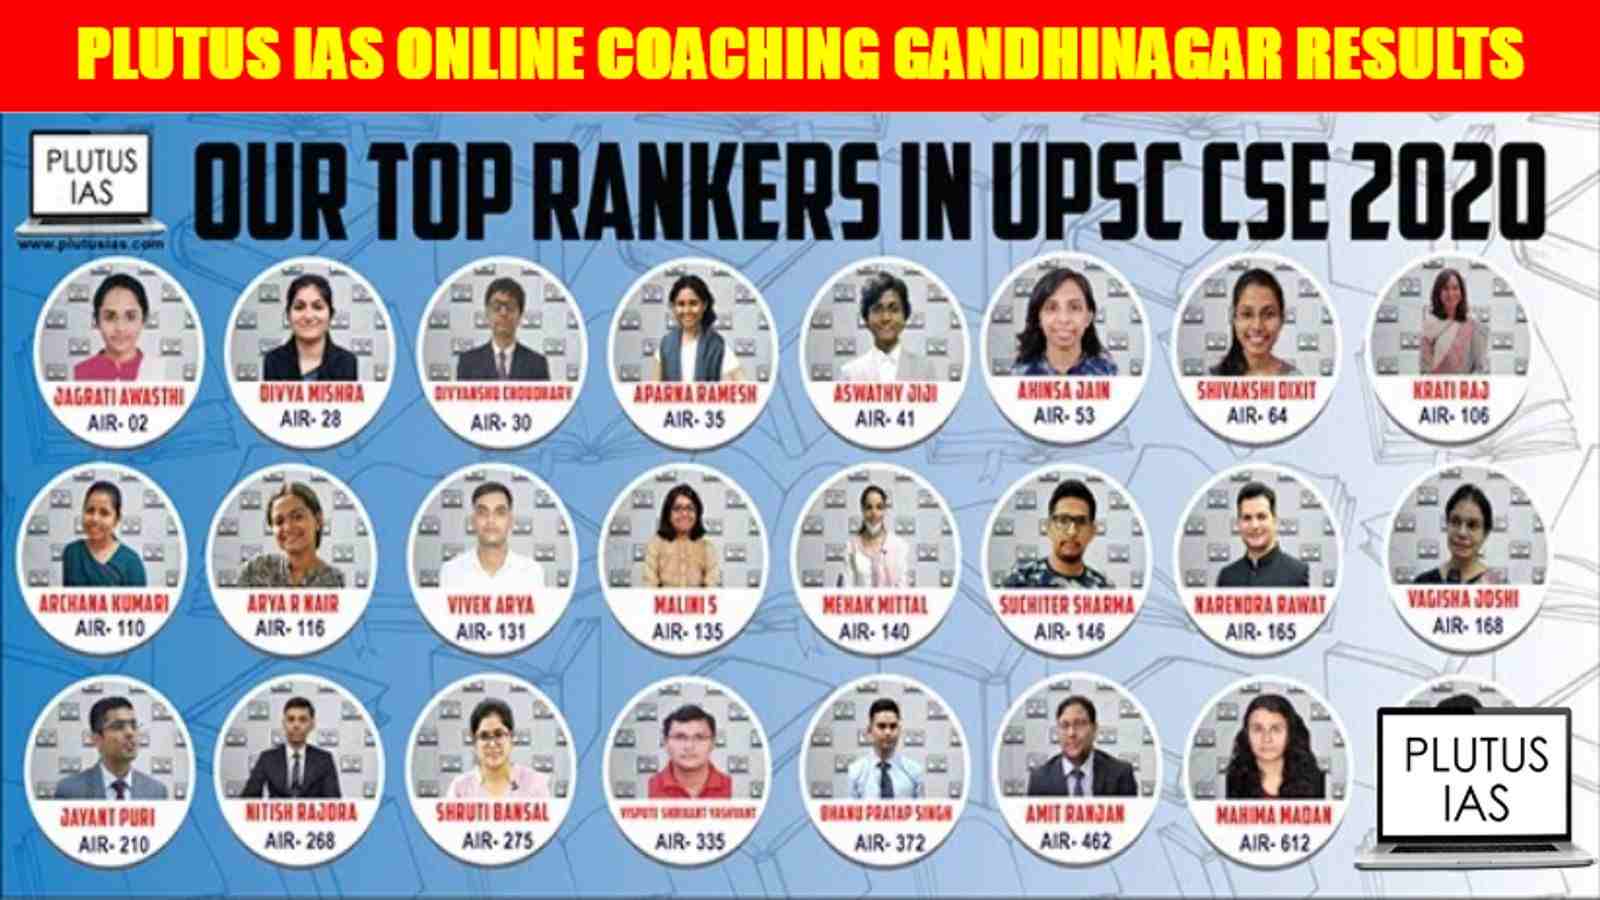 Plutus IAS Online Coaching Gandhinagar Results